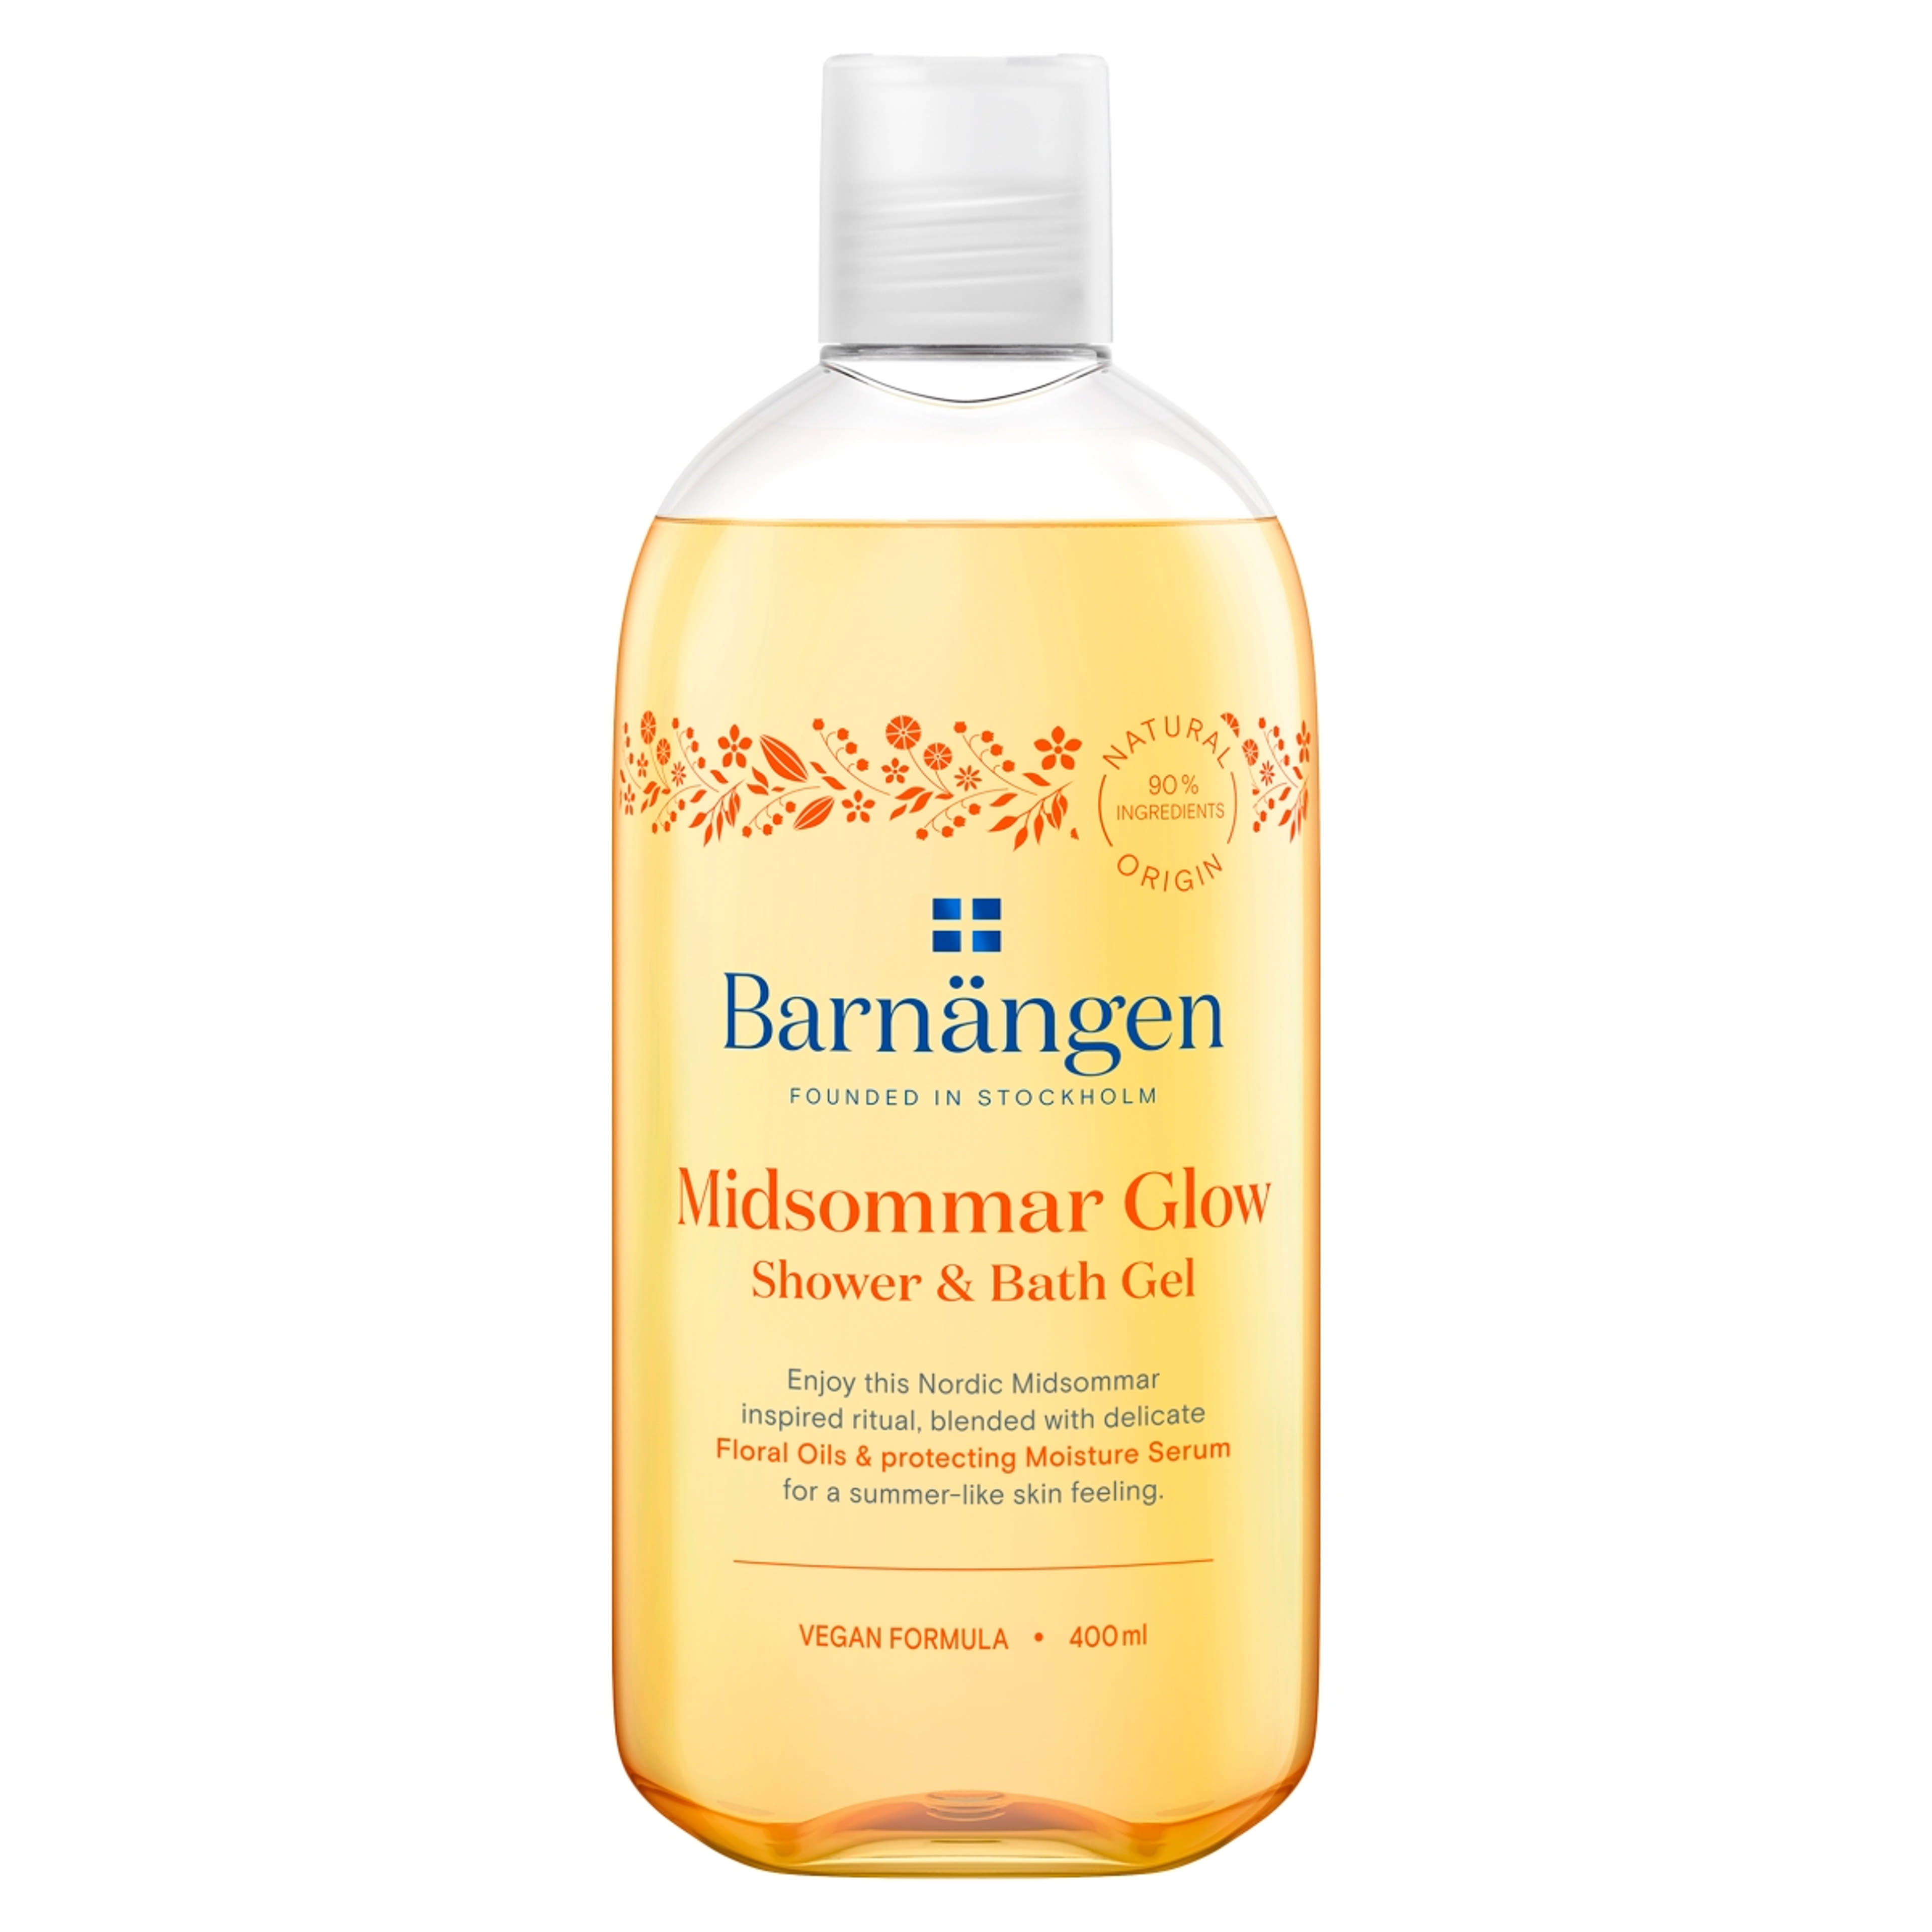 Barnangen Midsommar Glow tus- és habfürdő - 400 ml